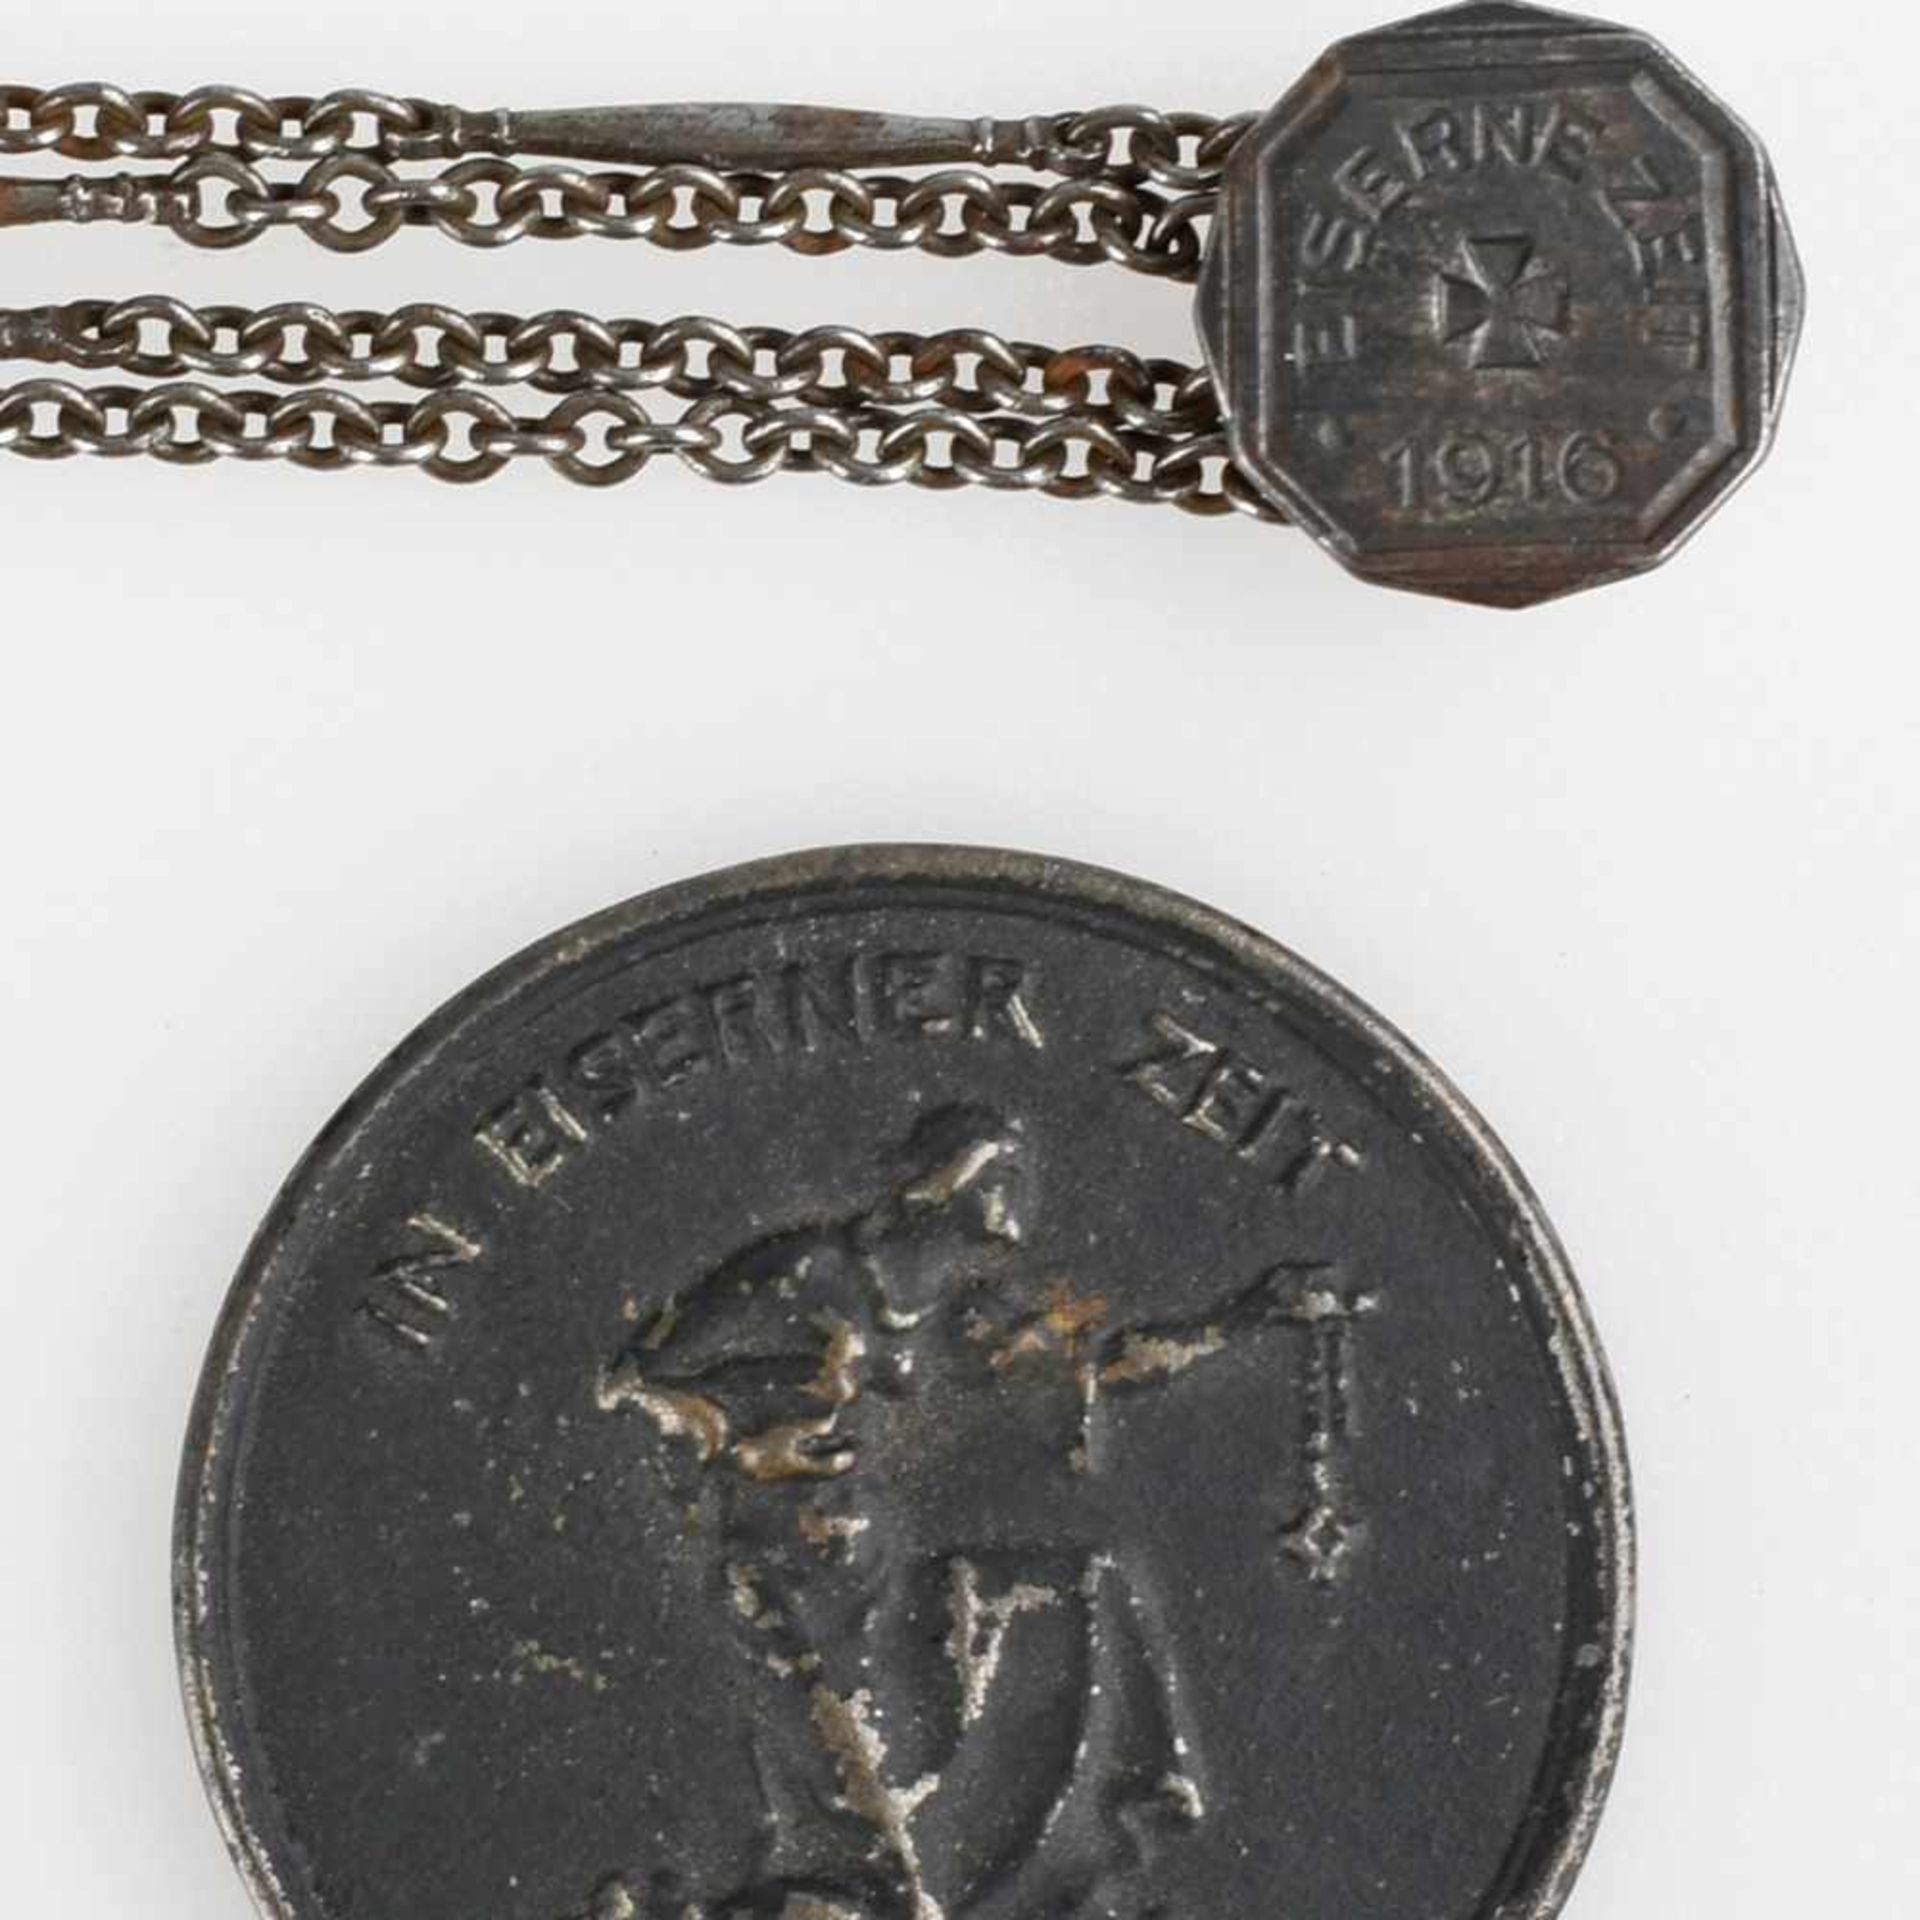 Medaille und Kette I. WK 1 x Medaille "In Eiserner Zeit 1916 - Gold gab ich zur Wehr. Eisen nahm ich